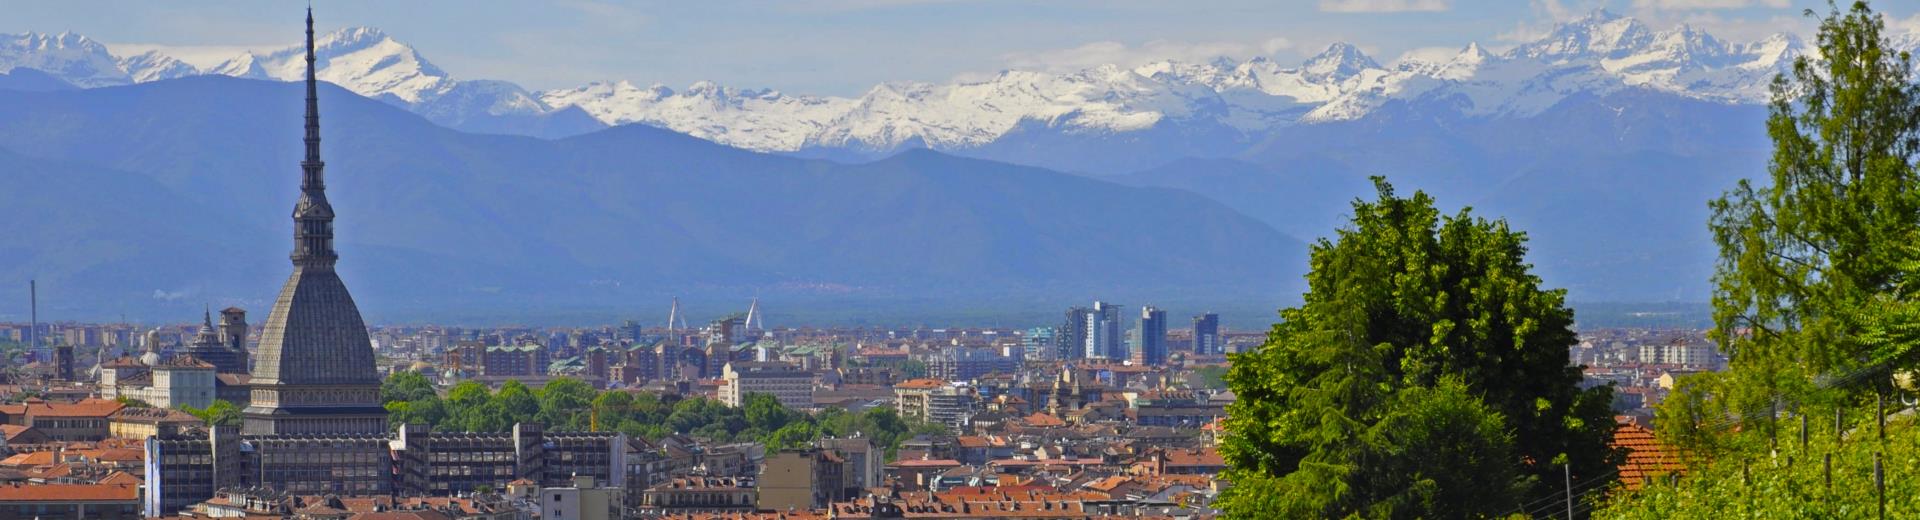 Entdecken Sie die Museen und Schönheiten von Turin und Piemont. Buchen Sie im Best Western Hotel Le Rondini, nur 20 Minuten vom Stadtzentrum und dem Königspalast von Venaria Reale und 10 Minuten vom Flughafen entfernt.!